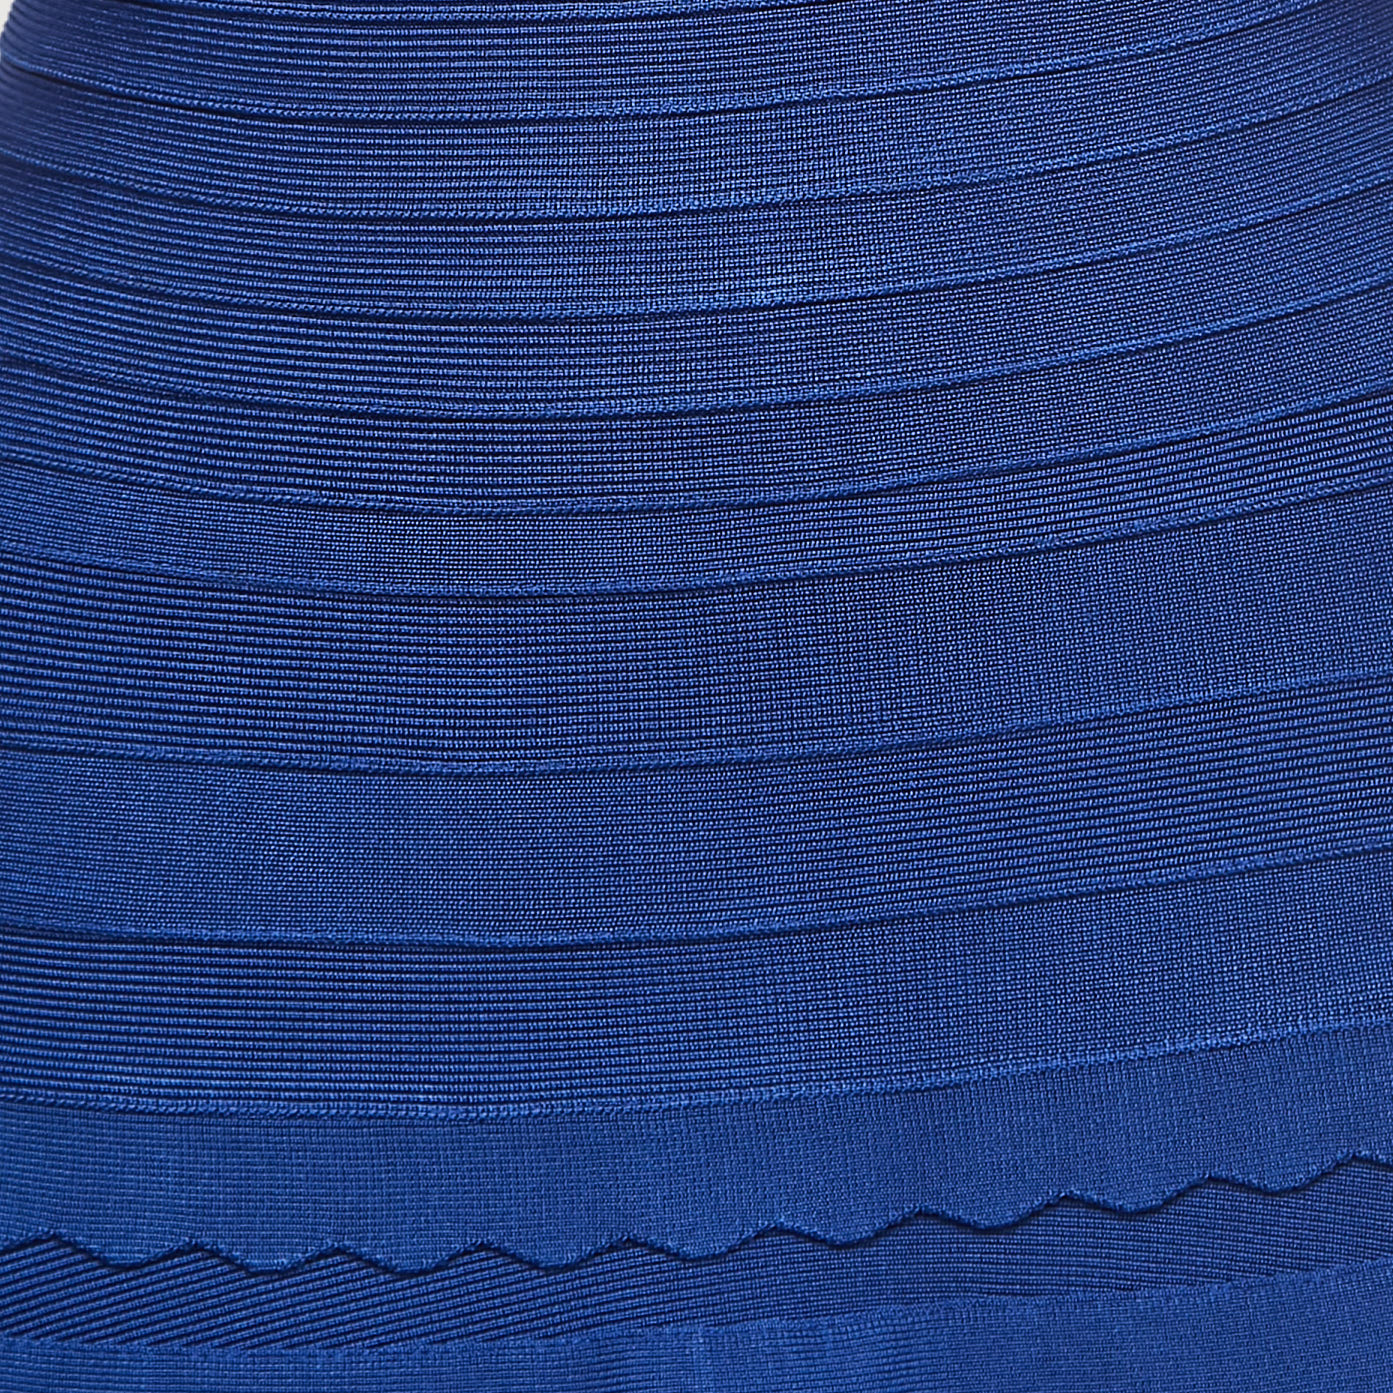 Herve Leger Blue Bandage Knit Scalloped Mini Dress S